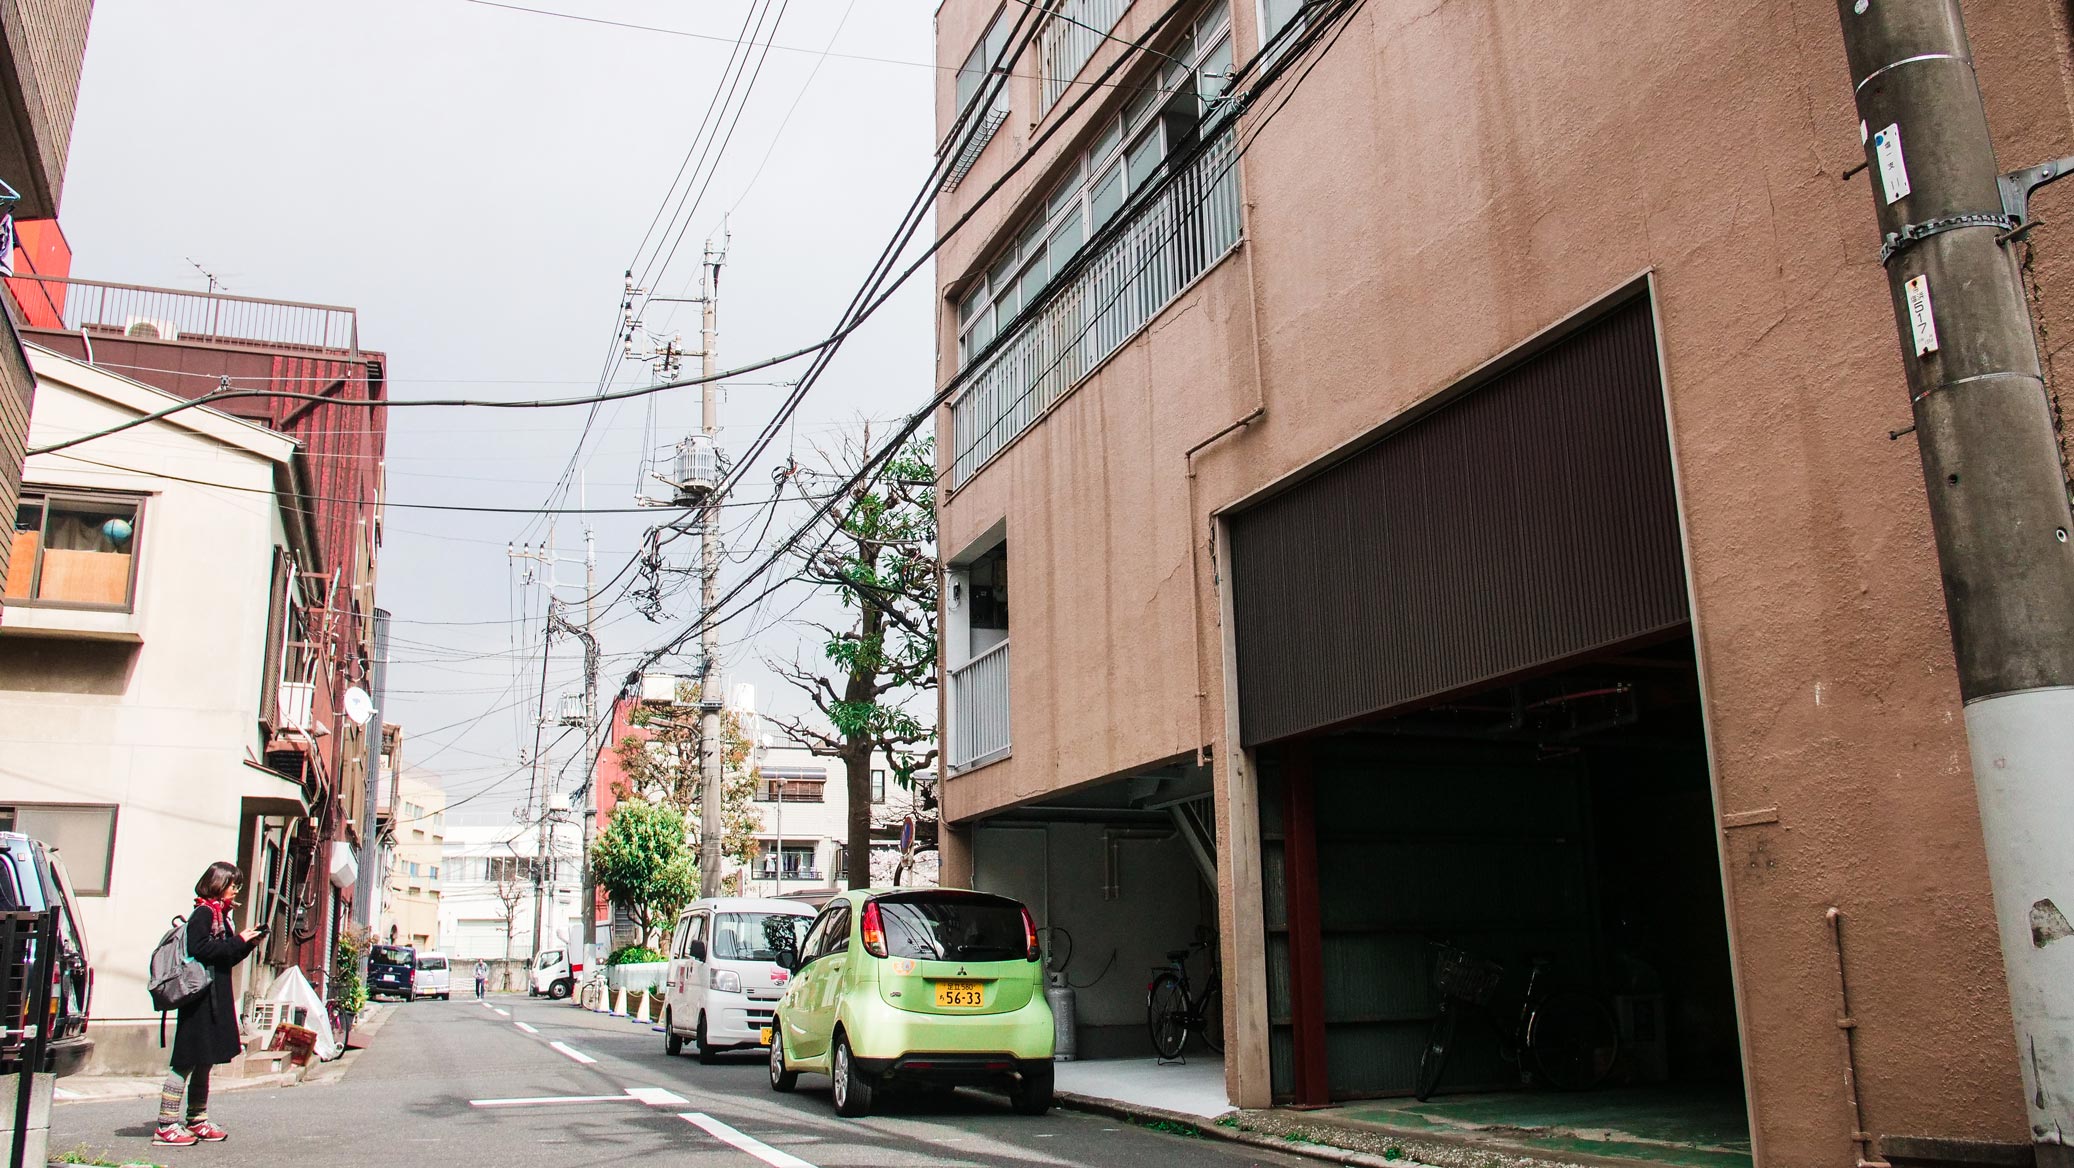 AIFS-Sprachkurs-Japan-Work-and-Travel-Japan-typische-Straße-Nachbarschaft-Tokyo